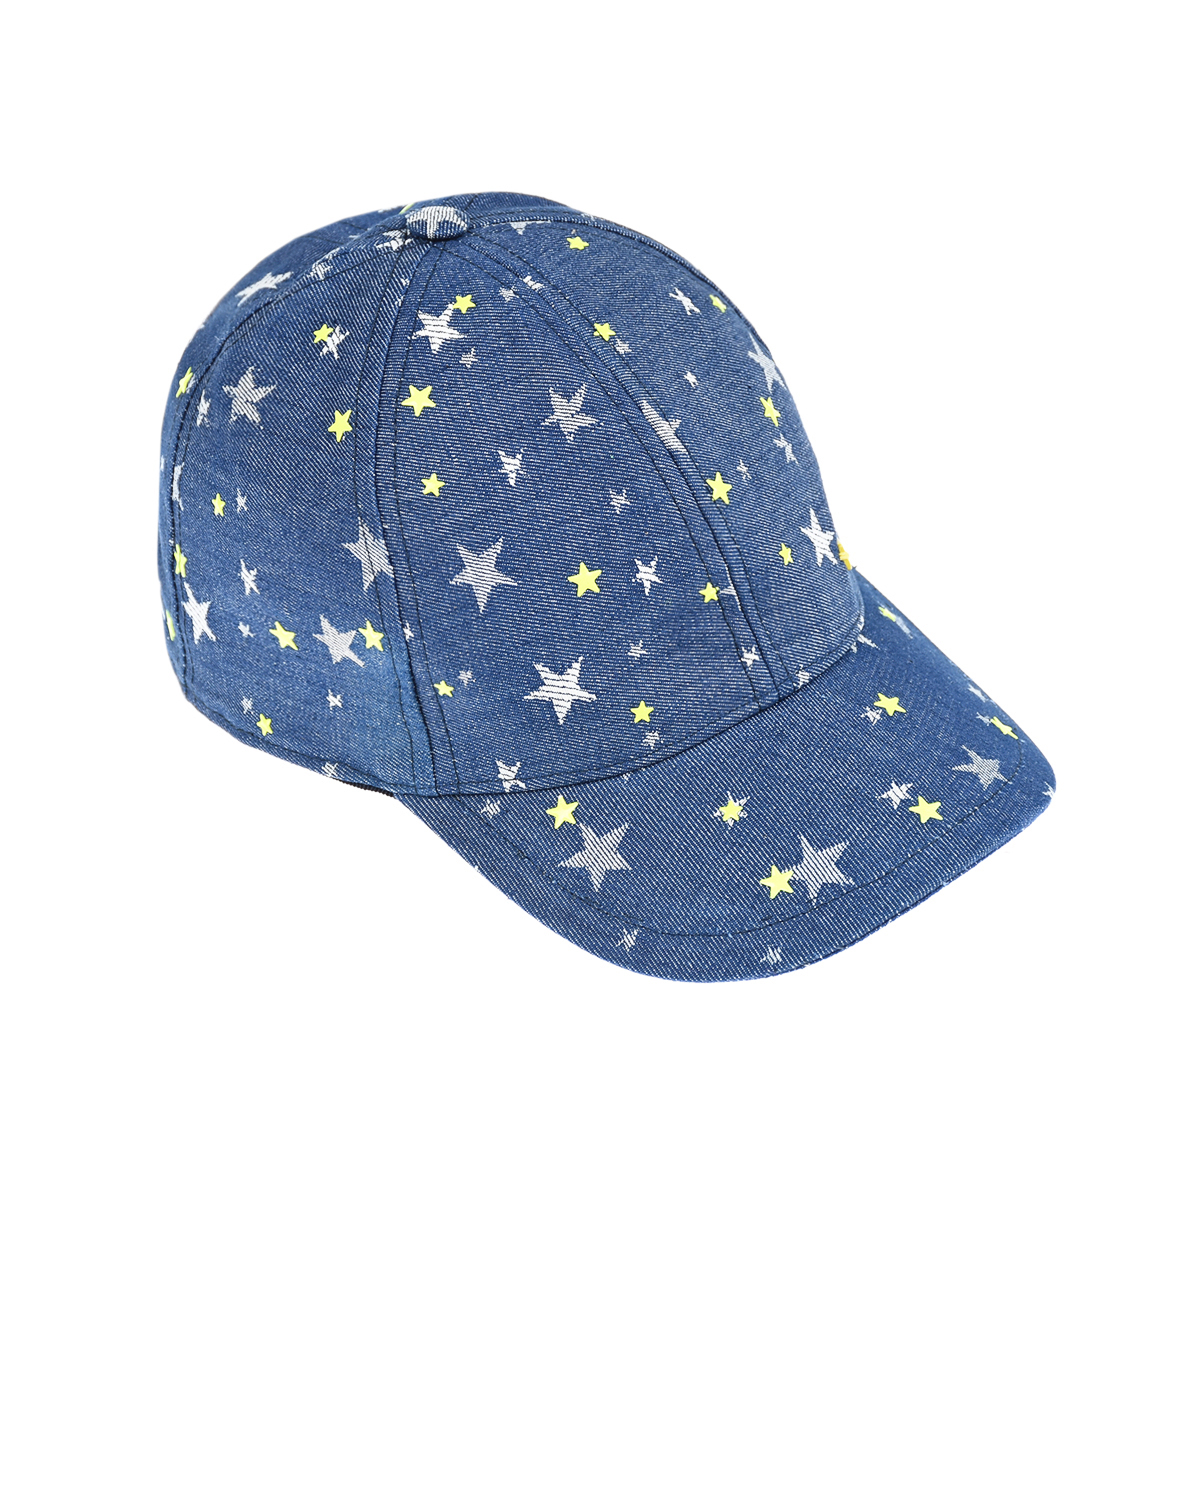 Джинсовая кепка с принтом "Звезды" Il Trenino детская, размер 52, цвет синий - фото 1